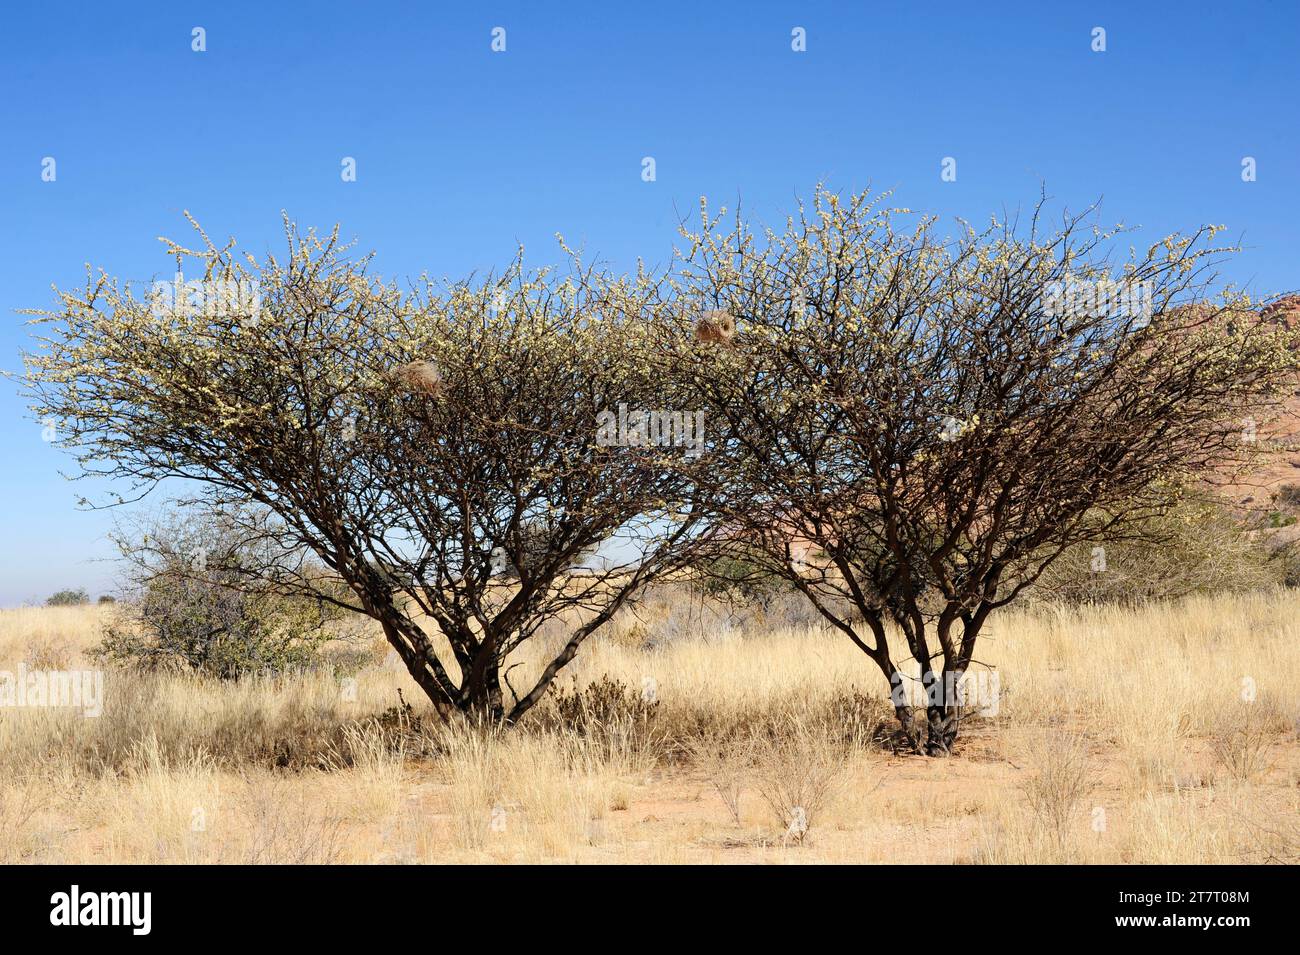 Le blackthorn (Acacia mellifera ou Senegalia mellifera) est un arbre originaire de l'Afrique orientale et australe et de la péninsule arabique. Cette photo a été prise à SP Banque D'Images